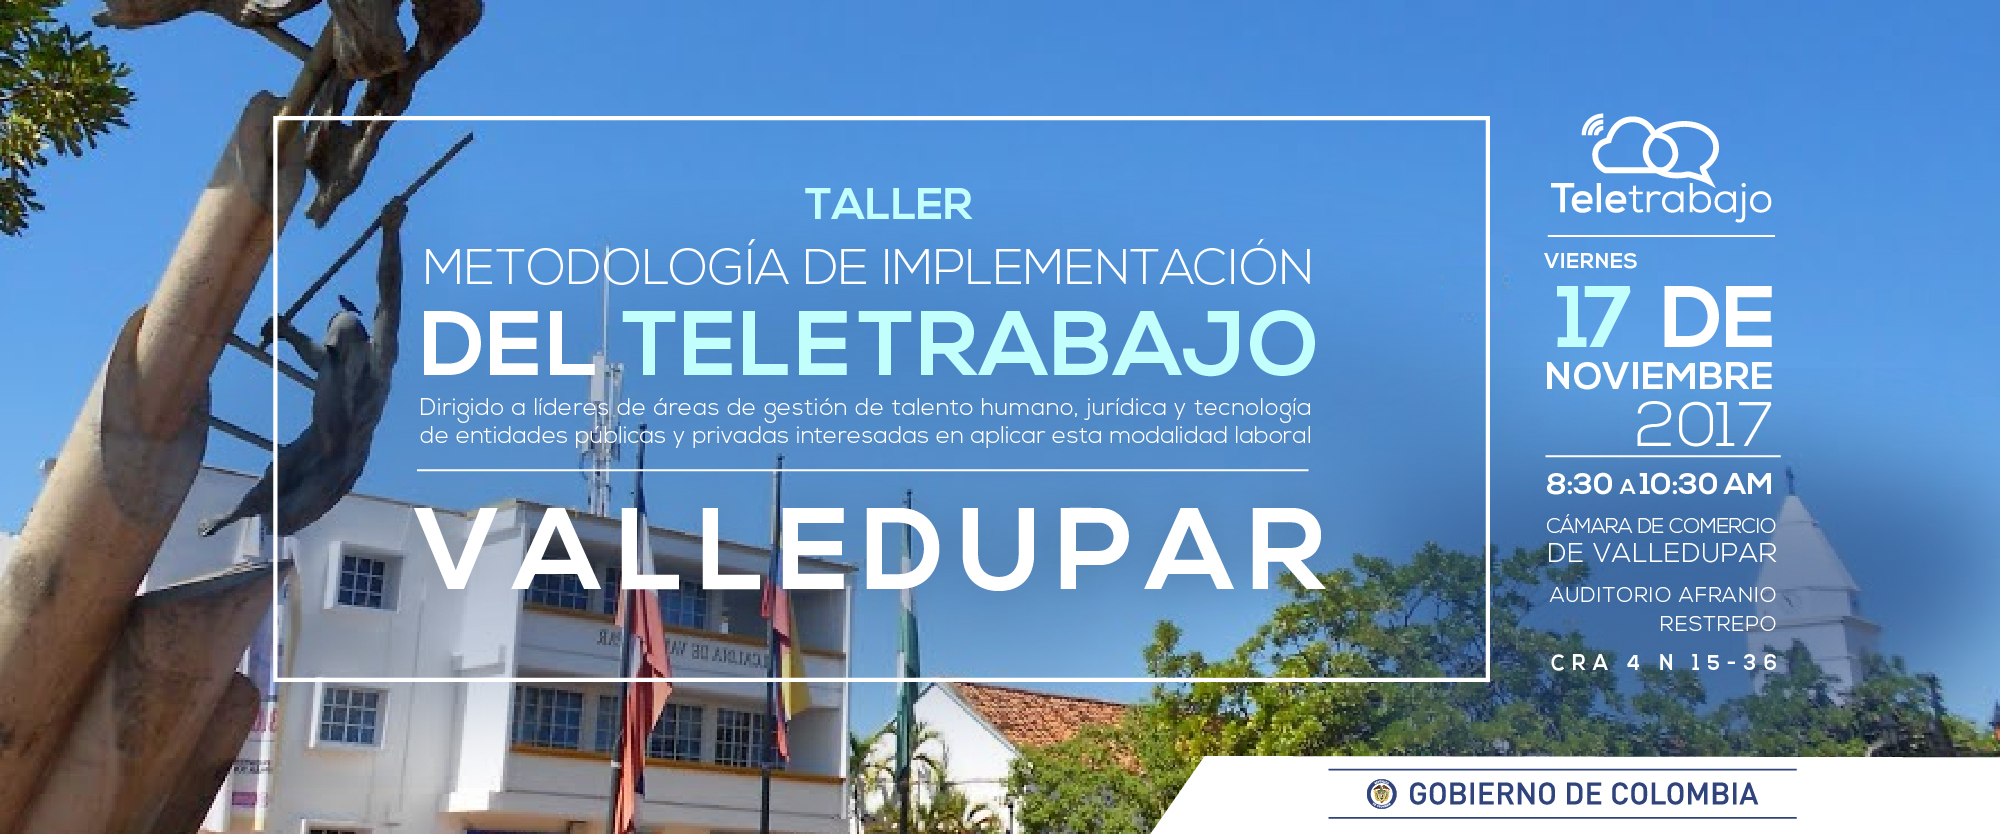 INNOVACIÓN Y PRODUCTIVIDAD CON TALLER DE TELETRABAJO EN VALLEDUPAR